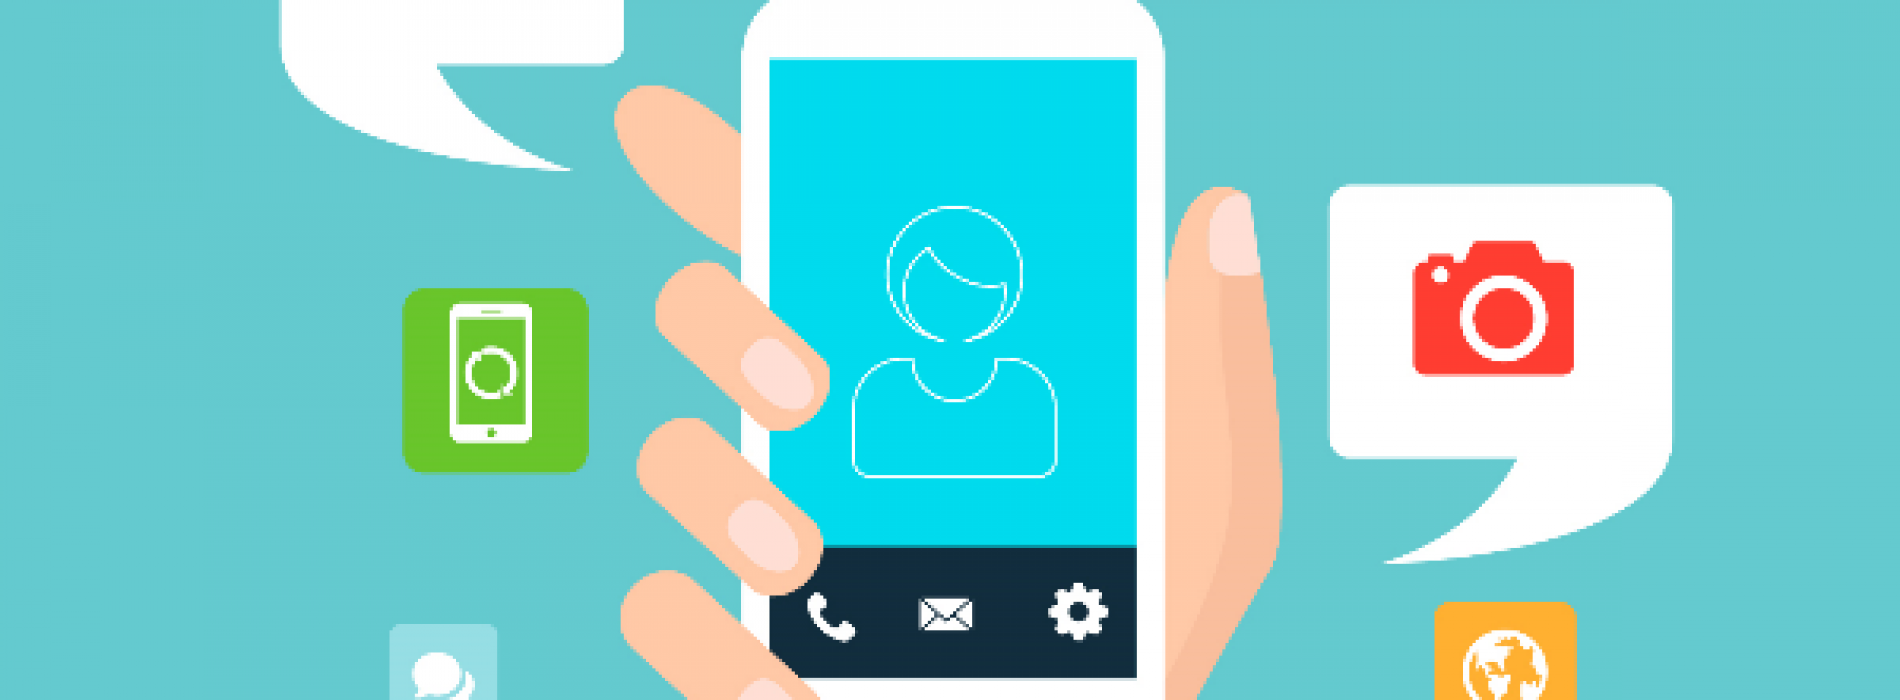 SEO w mobilnym marketingu – potrzeby internautów w centrum uwagi